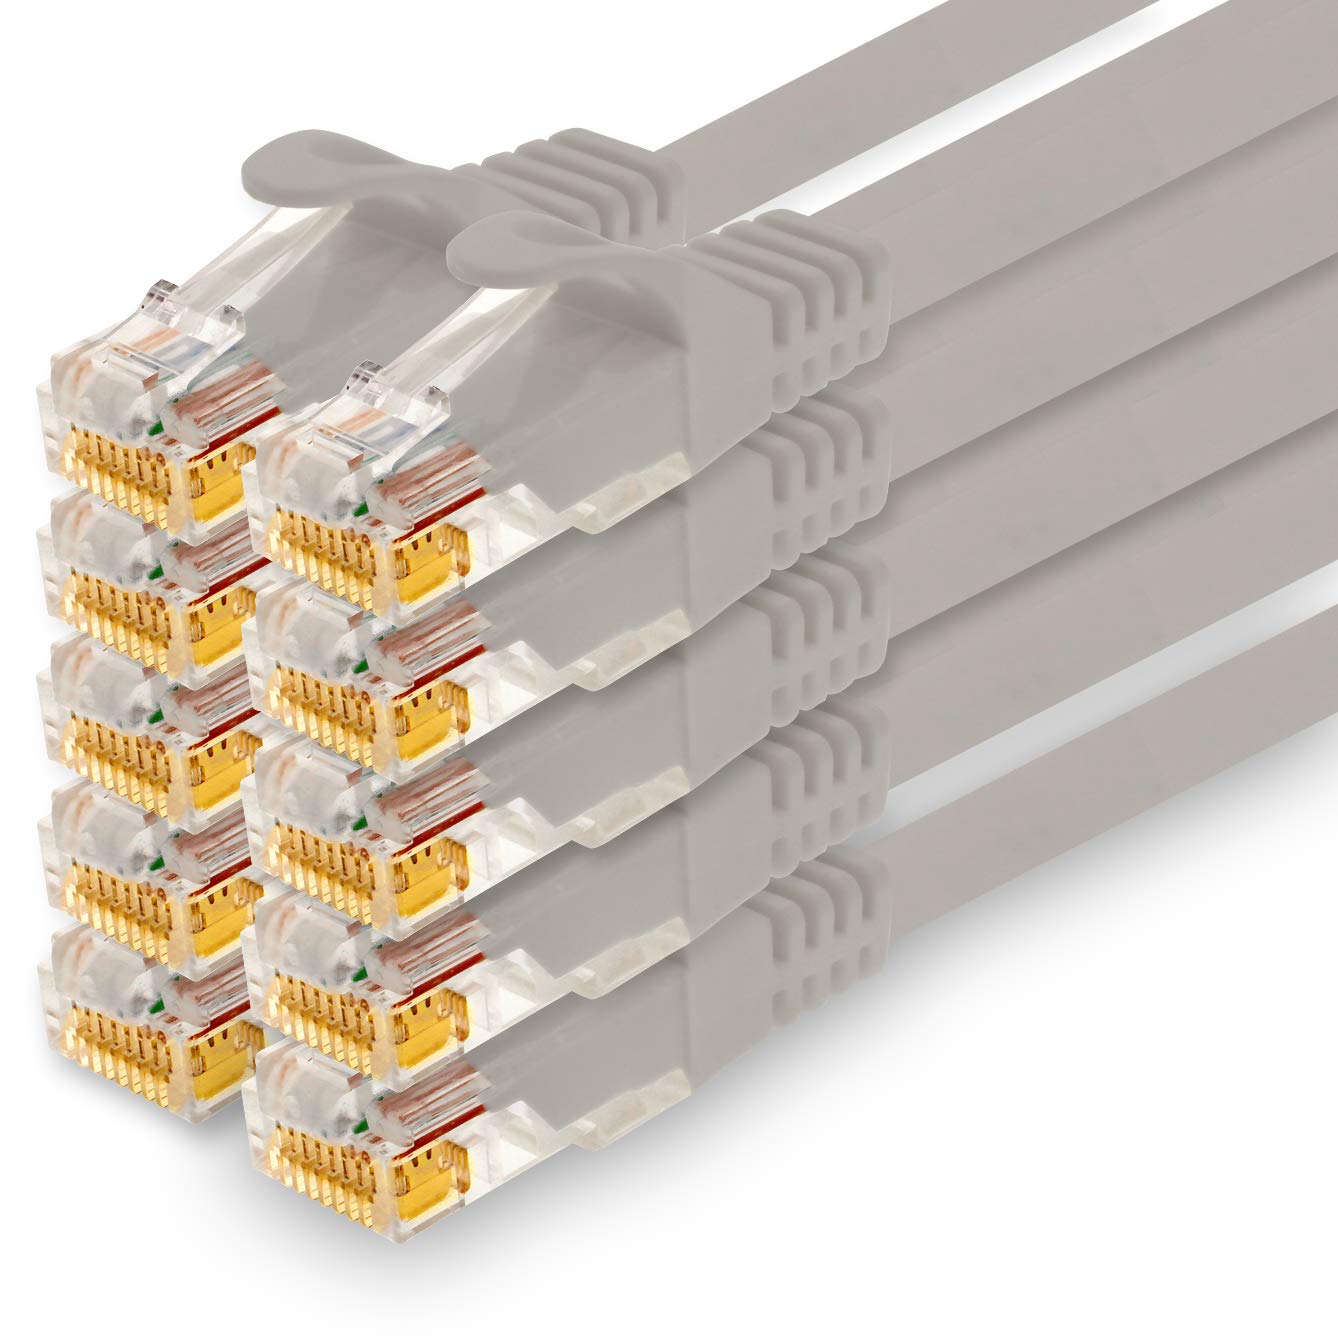 1CONN - 2,0m Netzwerkkabel, Ethernet, Lan & Patchkabel für maximale Internet Geschwindigkeit & verbindet alle Geräte mit RJ 45 Buchse grau - 10 Stück